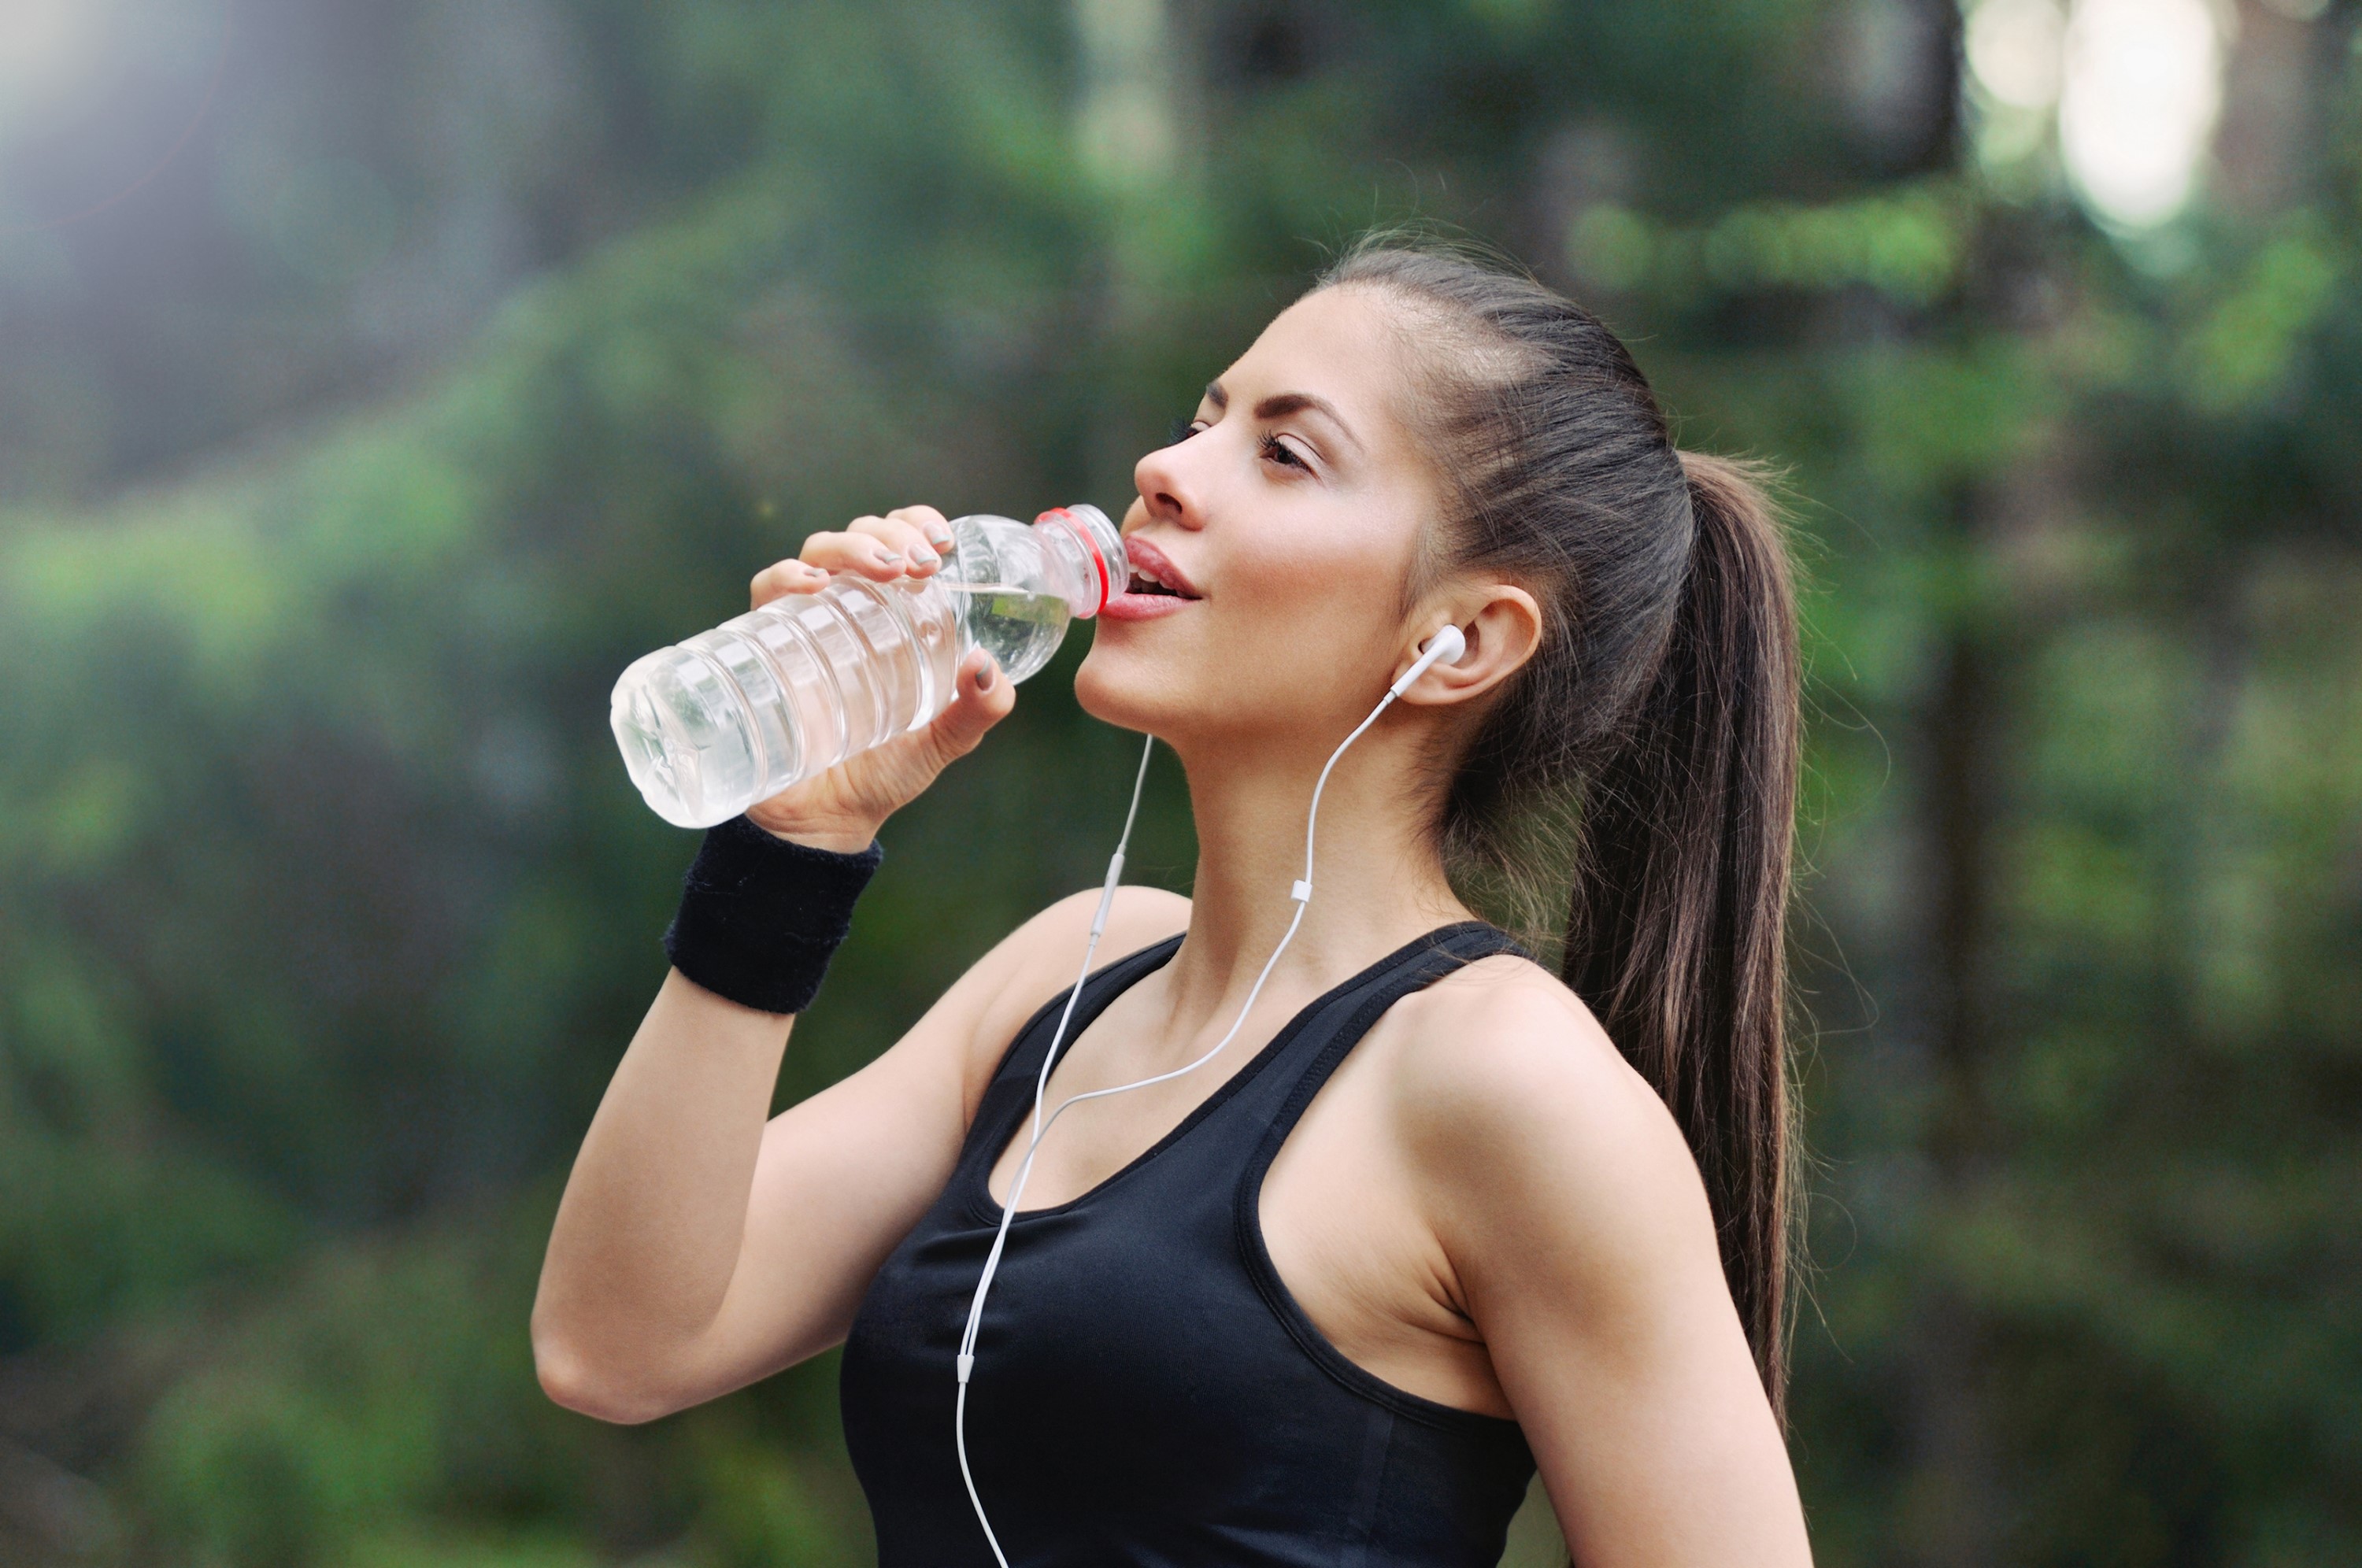 חשיבות המים לבריאות  וגם- טיפים לצריכת מים נבונה בזמן פעילות גופנית בקיץ